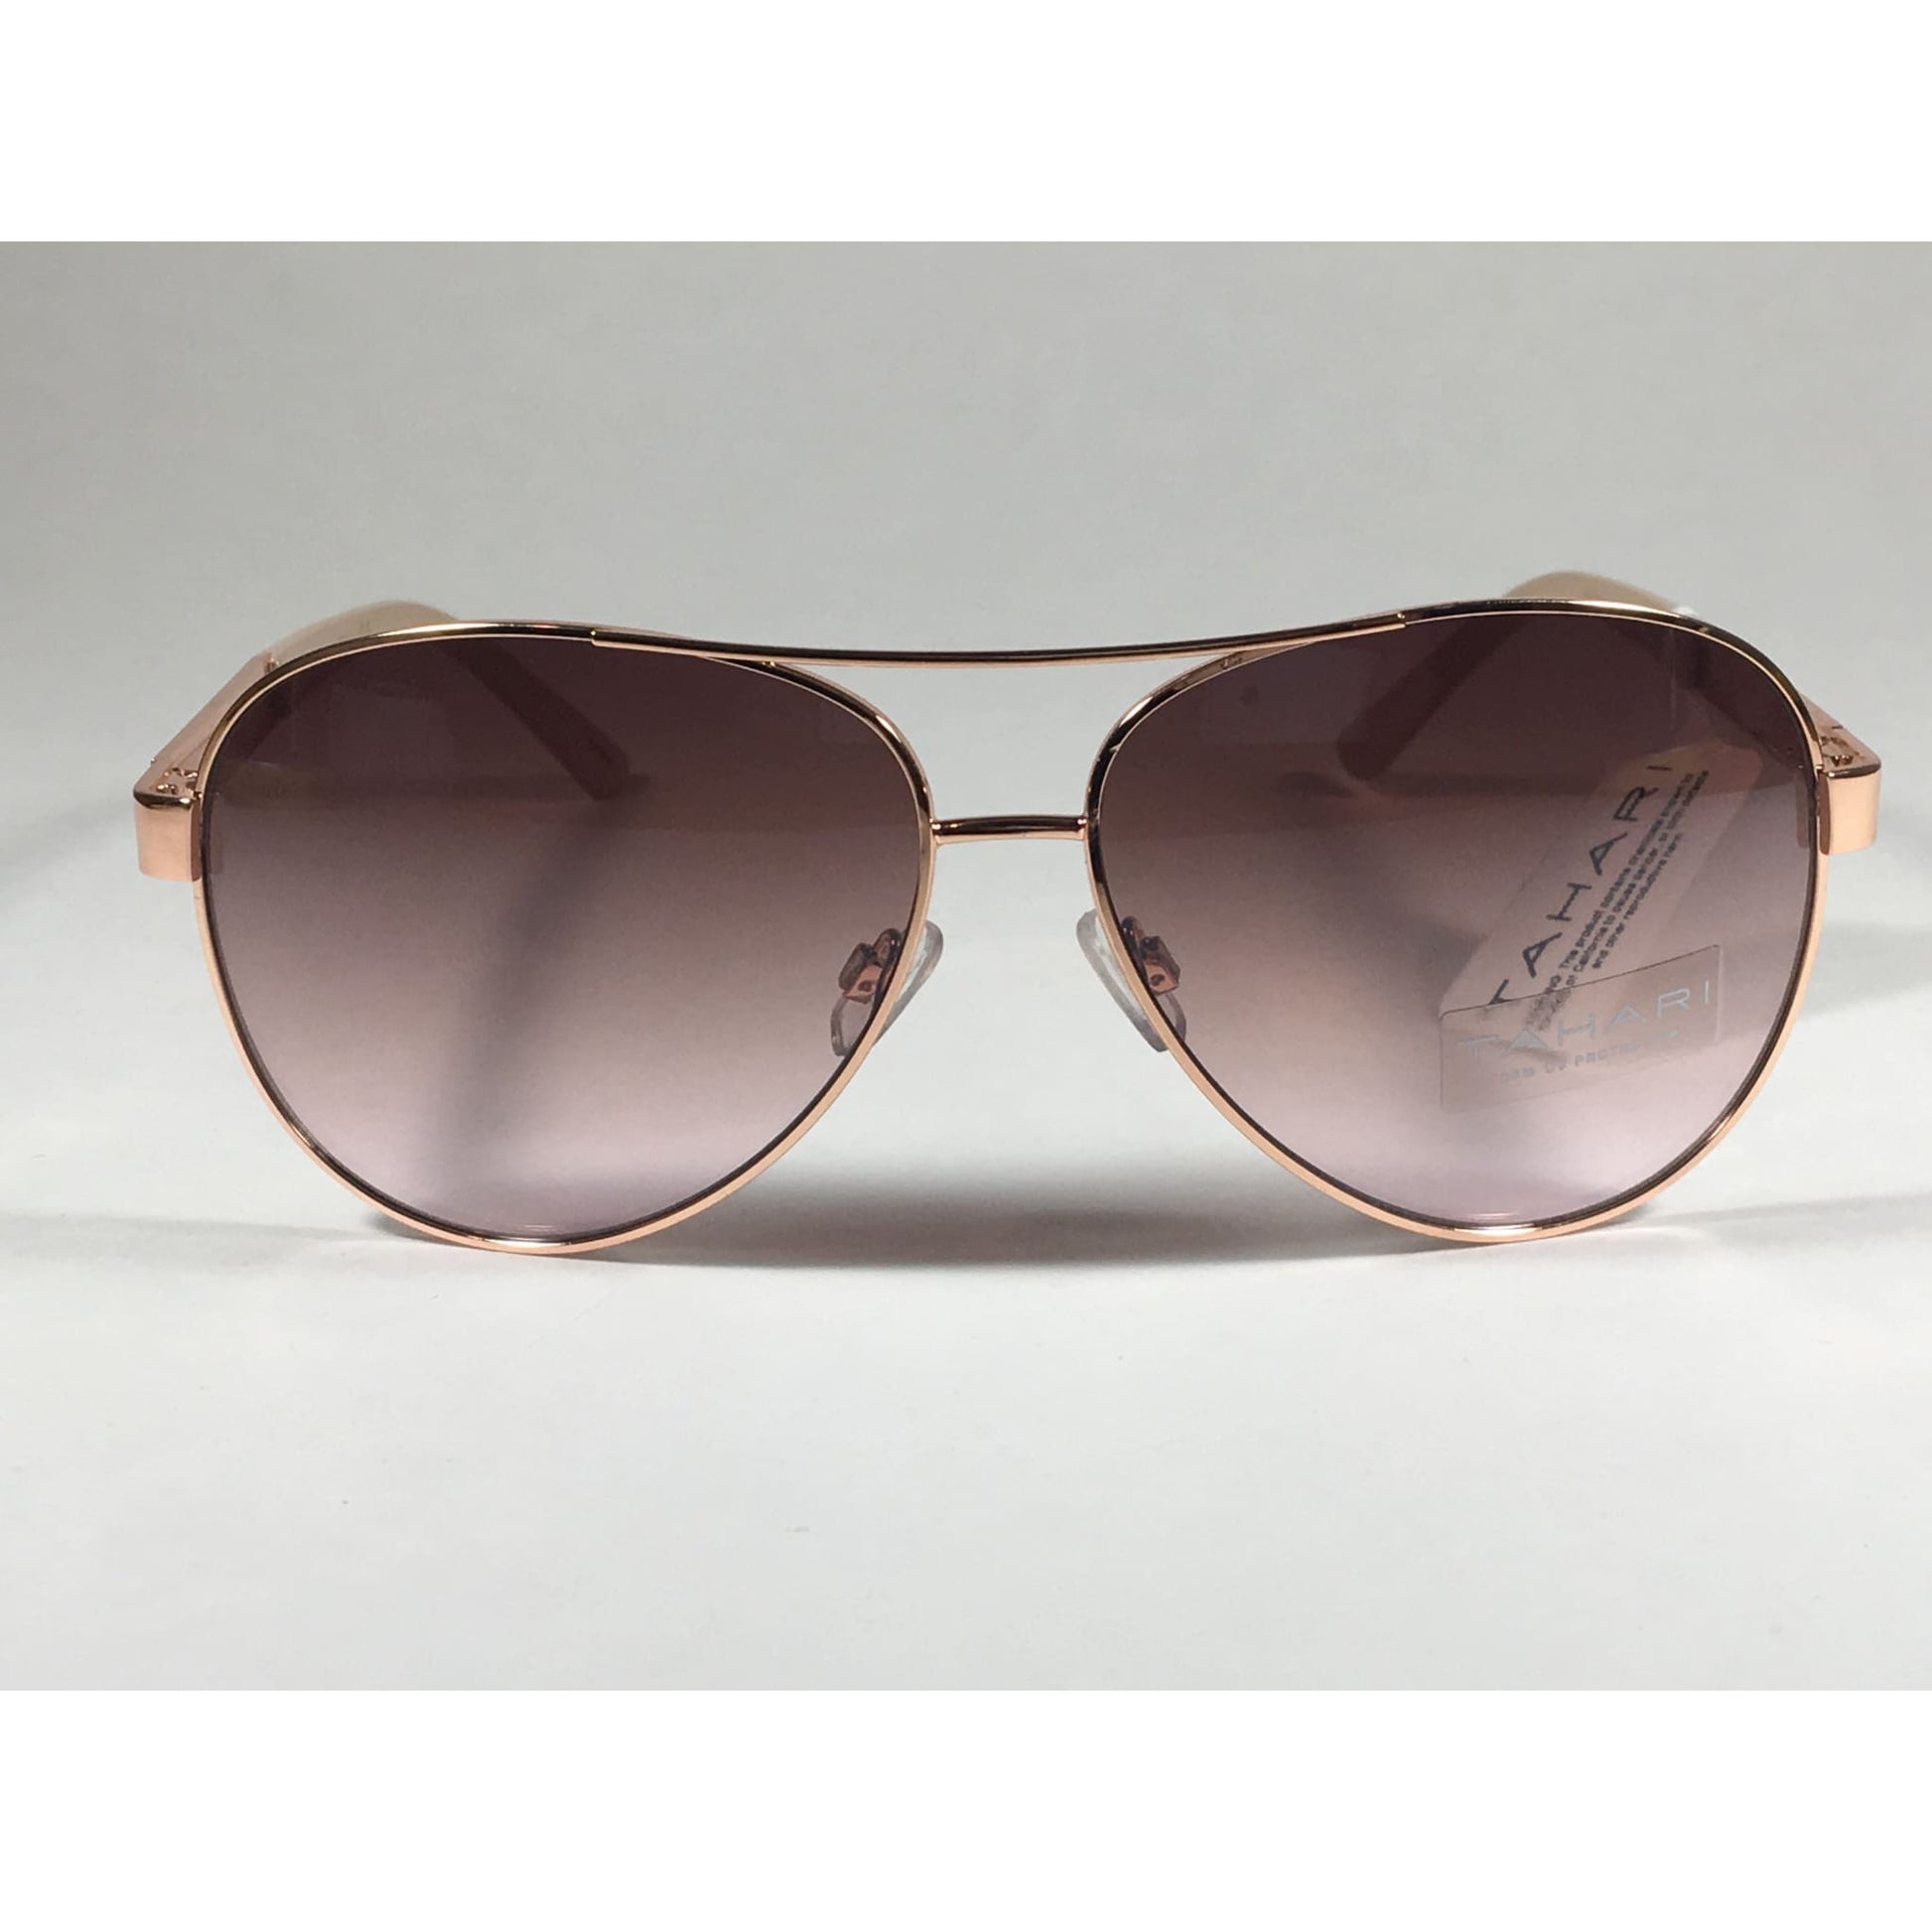 Tahari Aviator Sunglasses Rose Gold Nude Brown Pink Gradient Lens TH527 RGLD - Sunglasses